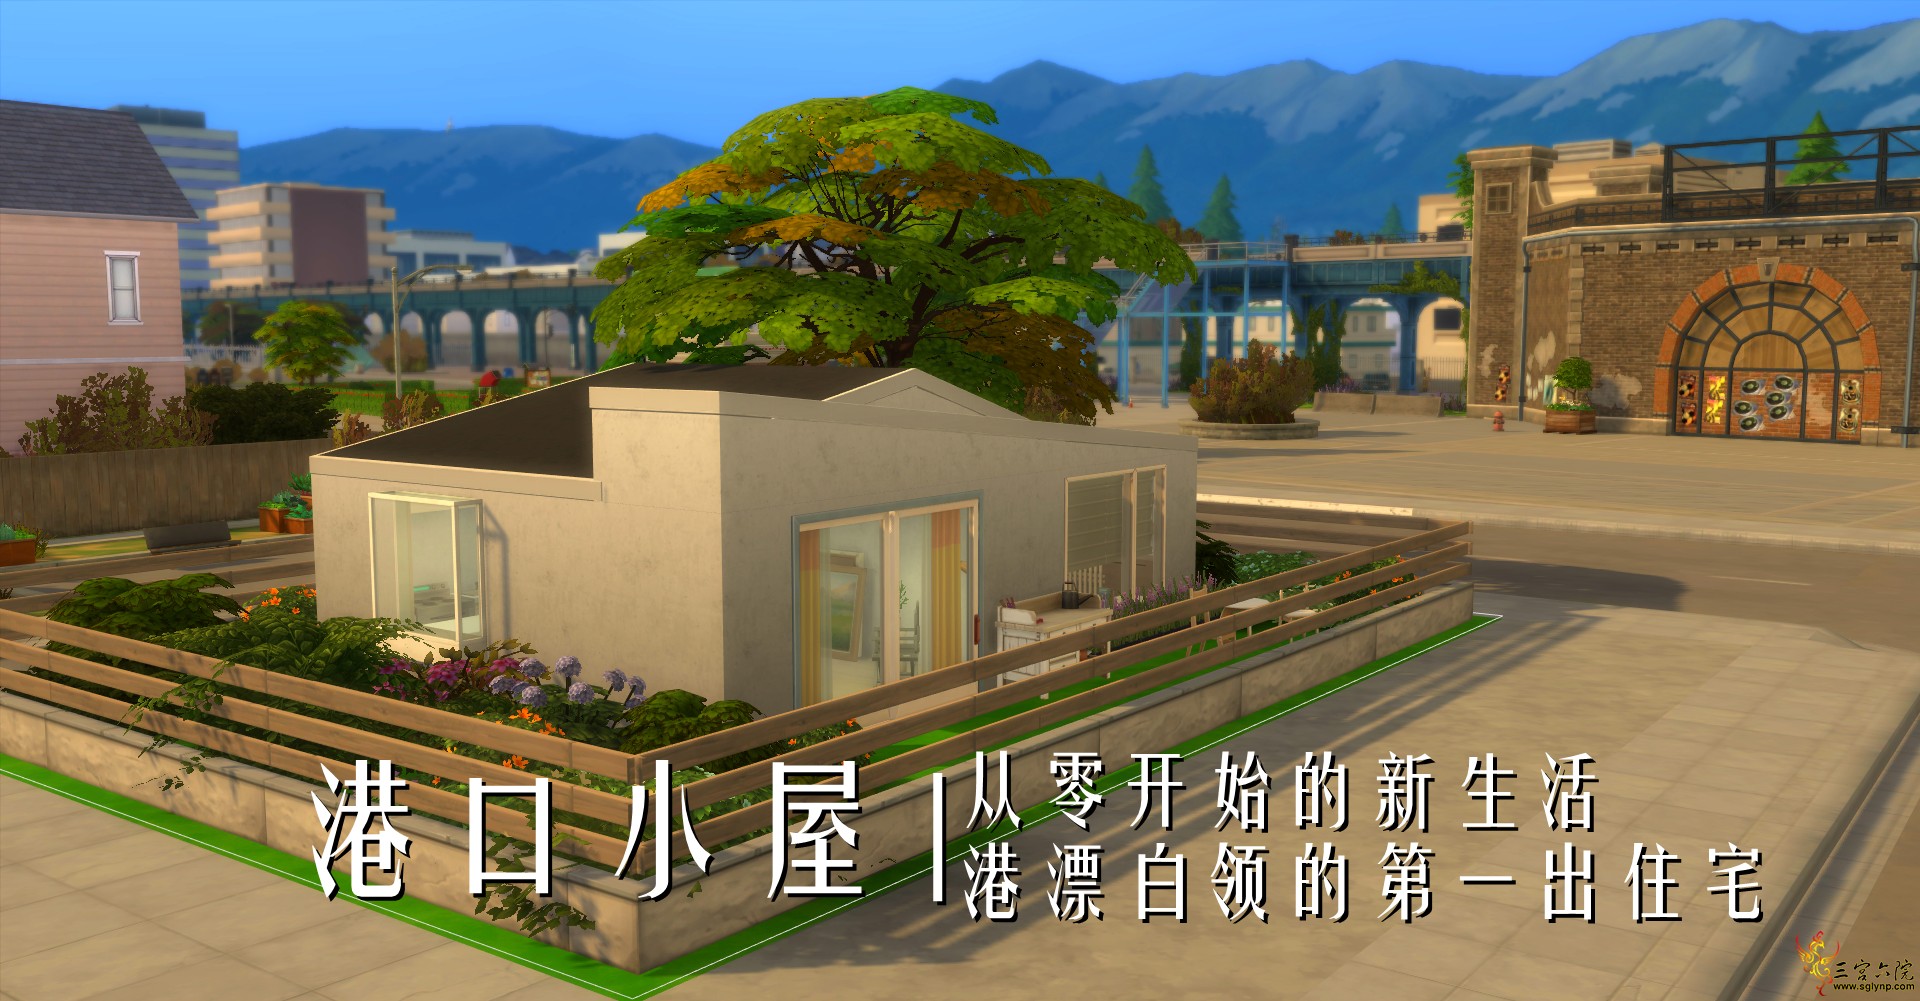 Sims 4 Screenshot 2021.05.10 - 23.19.46.44.png